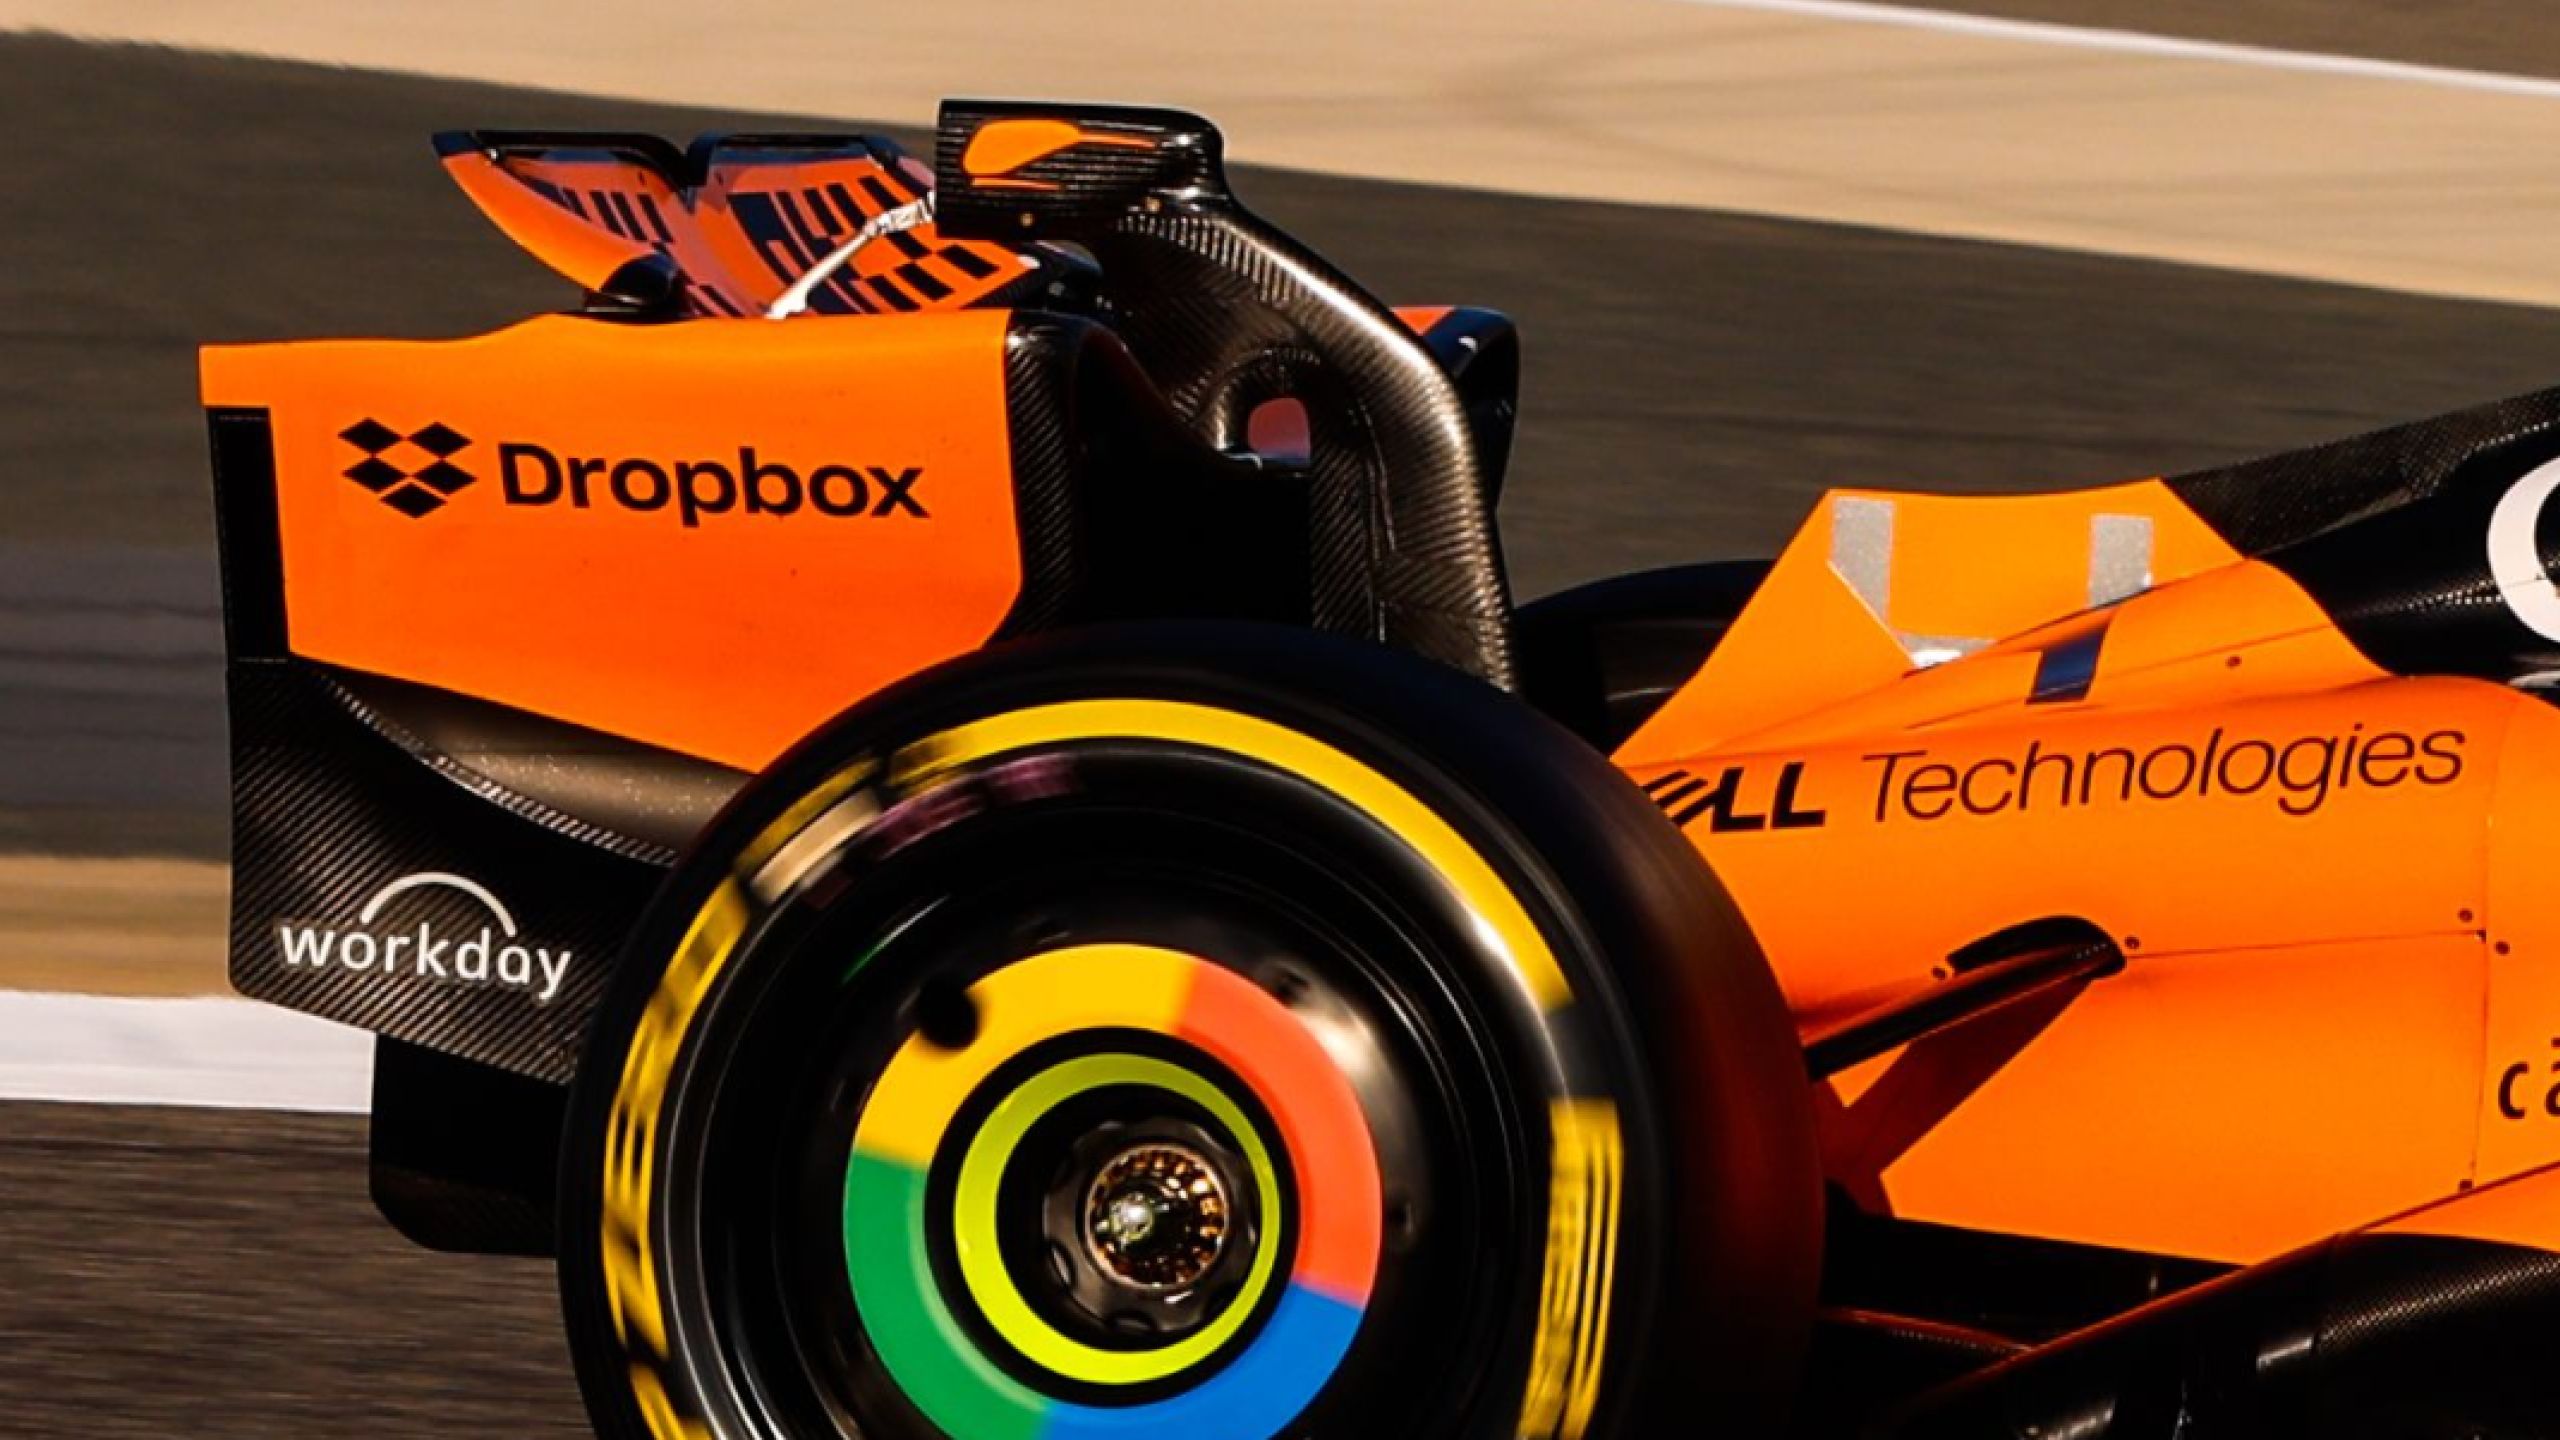 McLaren-Rennwagen mit Dropbox-Logo auf der Rückseite.